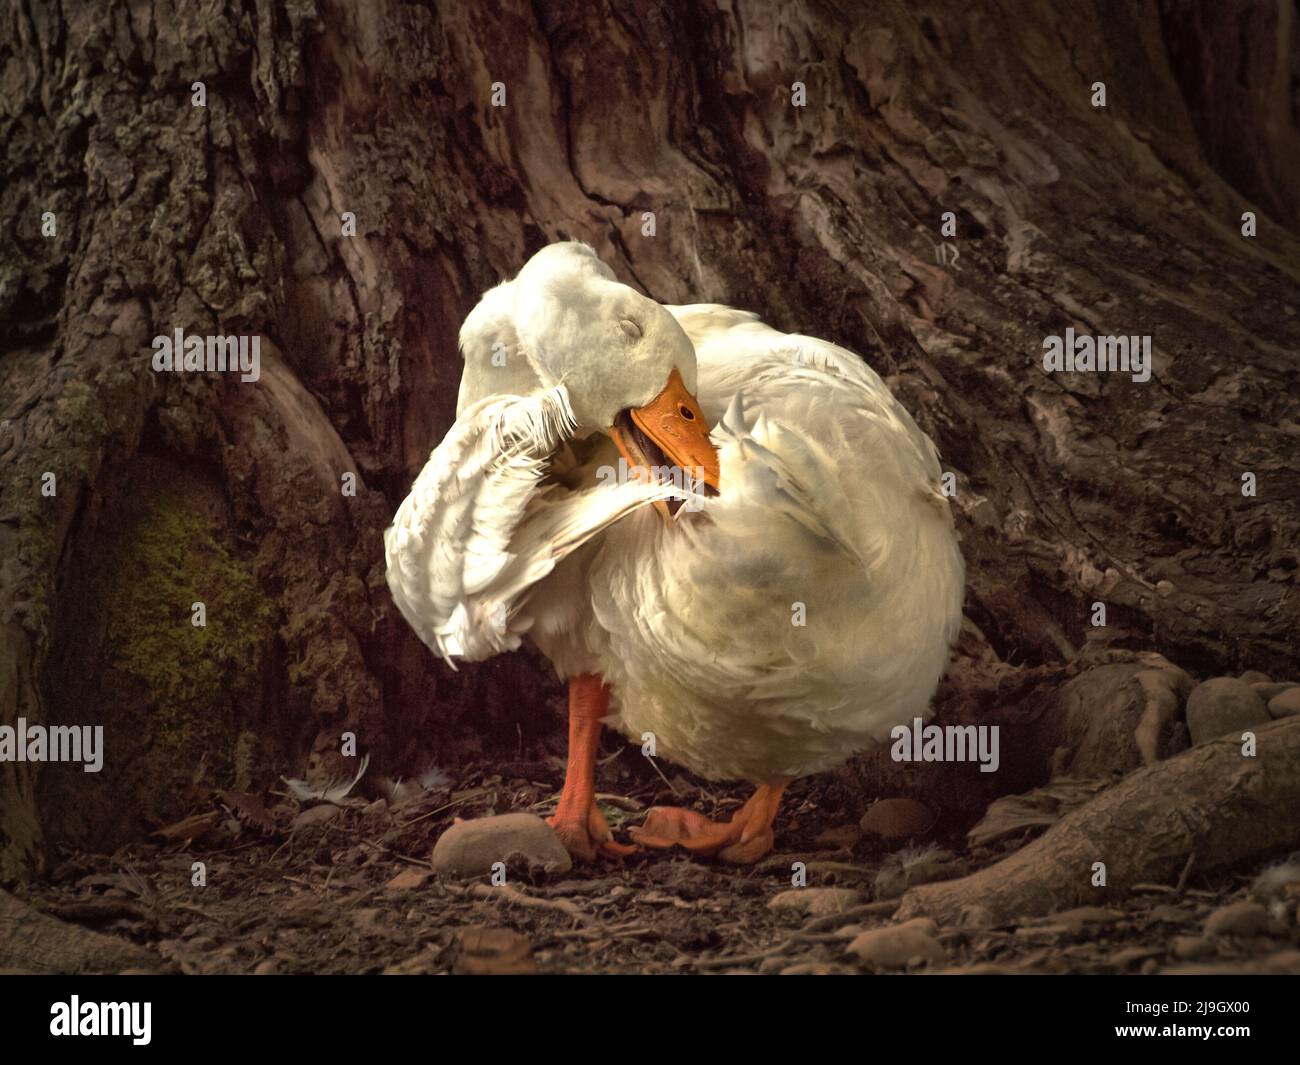 Pato americano de pekin que se preenera contra un árbol de roble Foto de stock